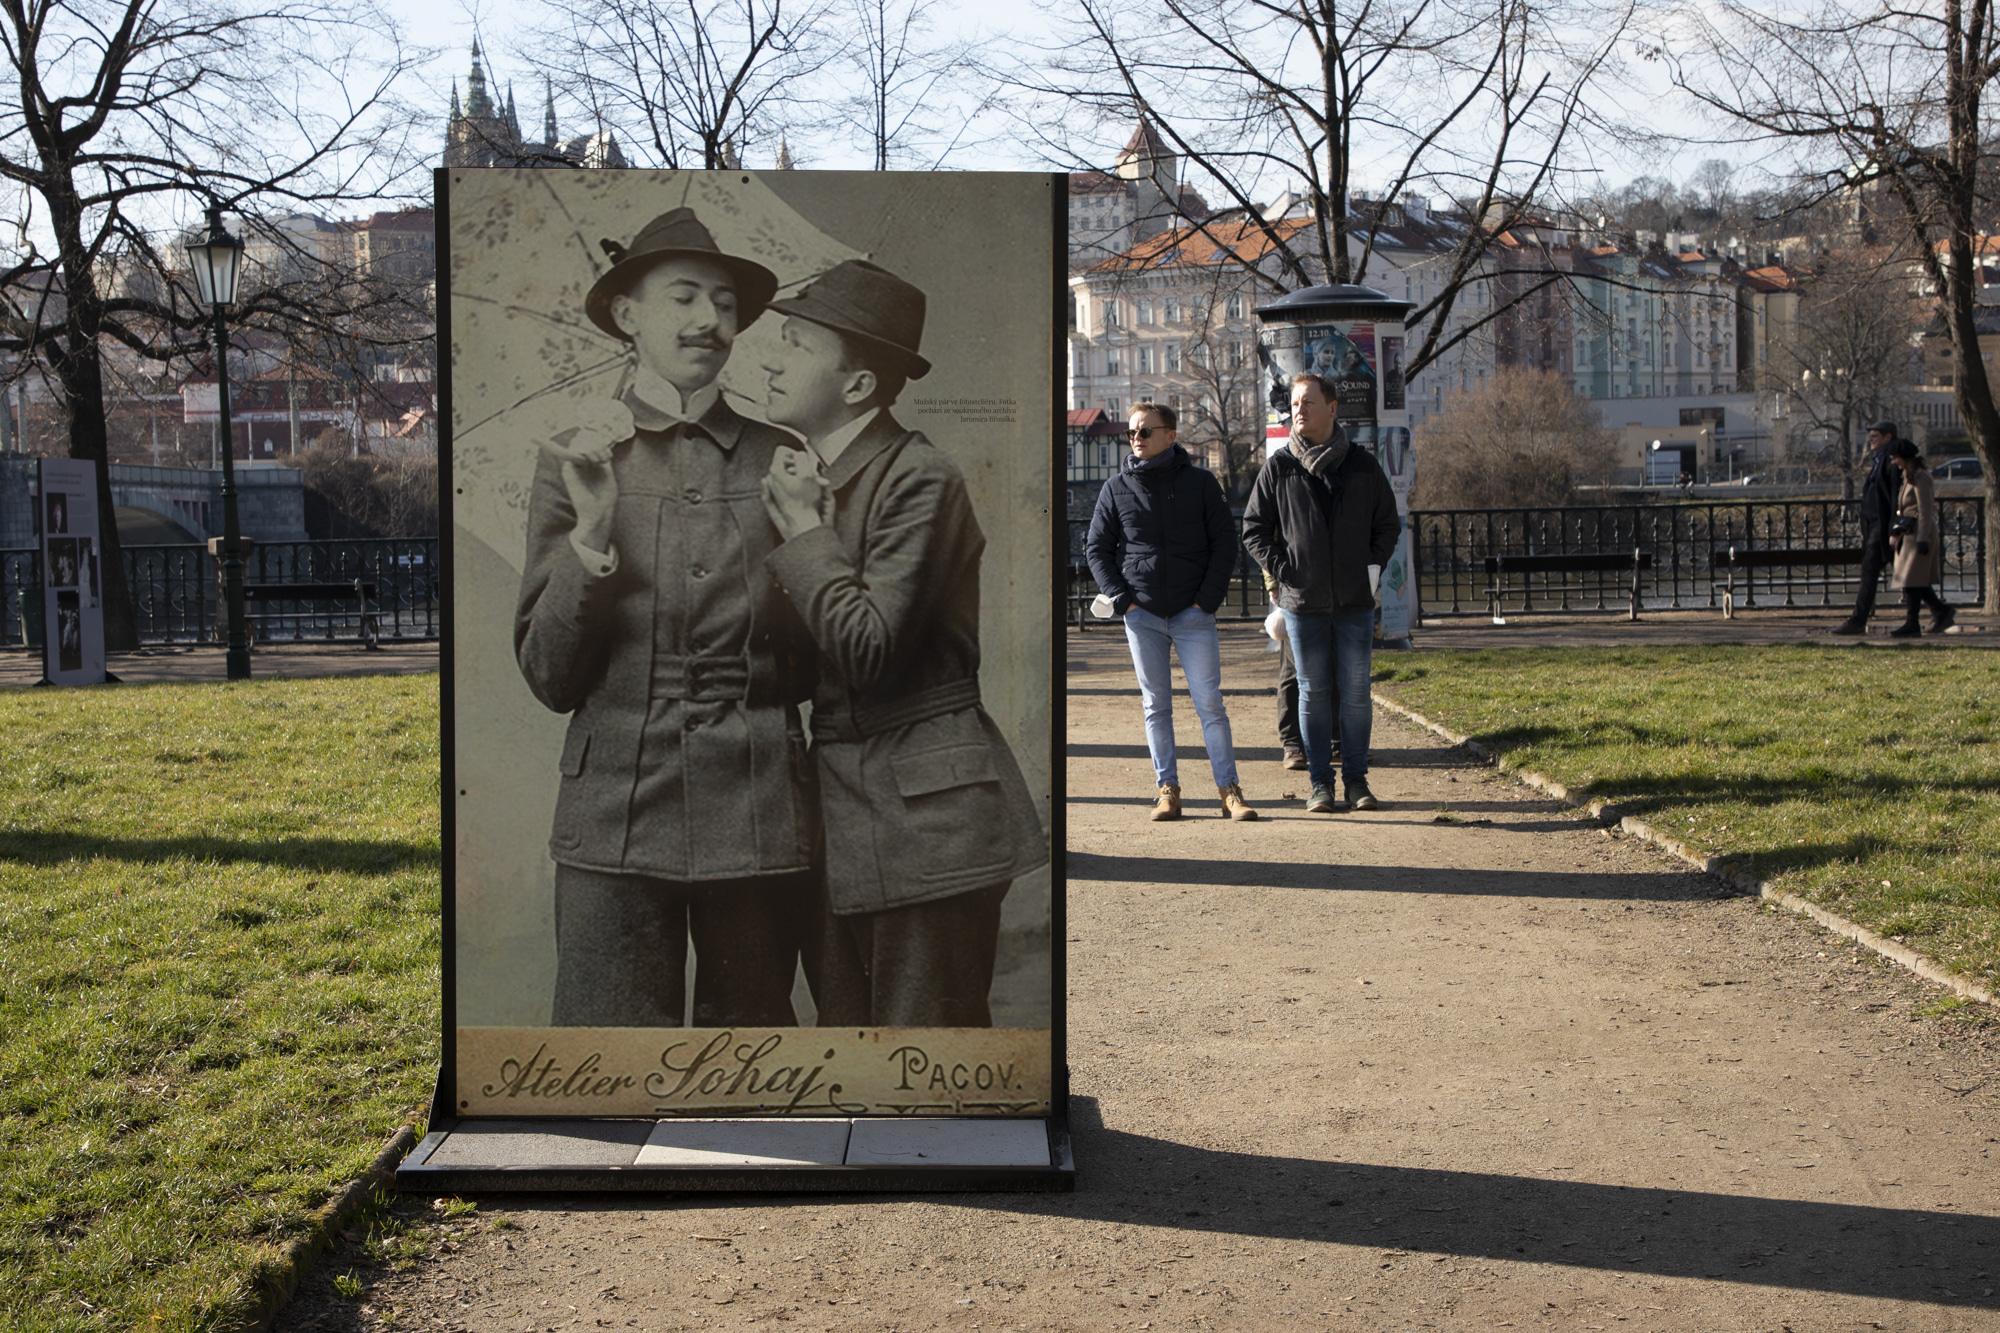 Venkovní výstavy „Loading: Love“ o gay historii v Česku, Slovensku a Maďarsku.